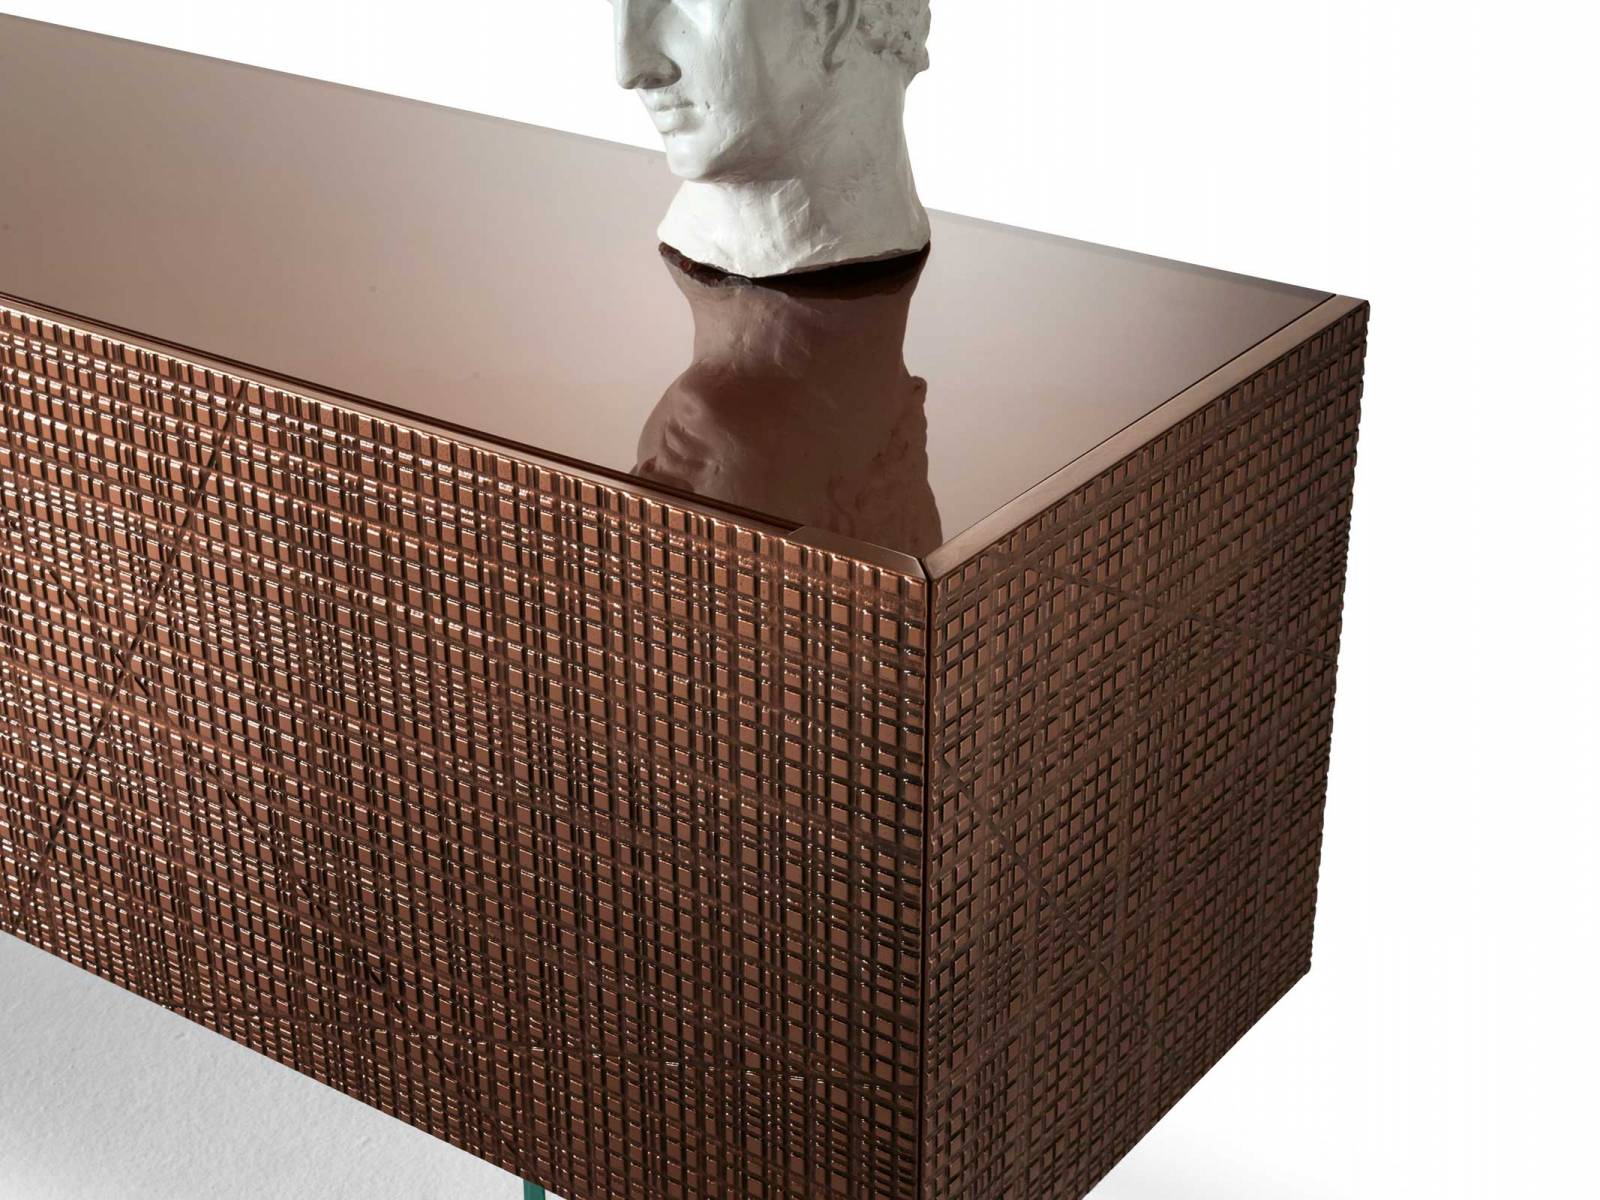 Zum 20-jährigen Jubiläum des italienischen Unternehmens hat Bartoli Design das Sideboard «Maxima» in einer limitierten Ausführung entwickelt, bei der flüssiges Kupfer in eine spannungsvolle Oberfläche gegossen wurde. Gleichzeitig wird der Körper von transparenten Glasbeinen getragen. Laurameroni.